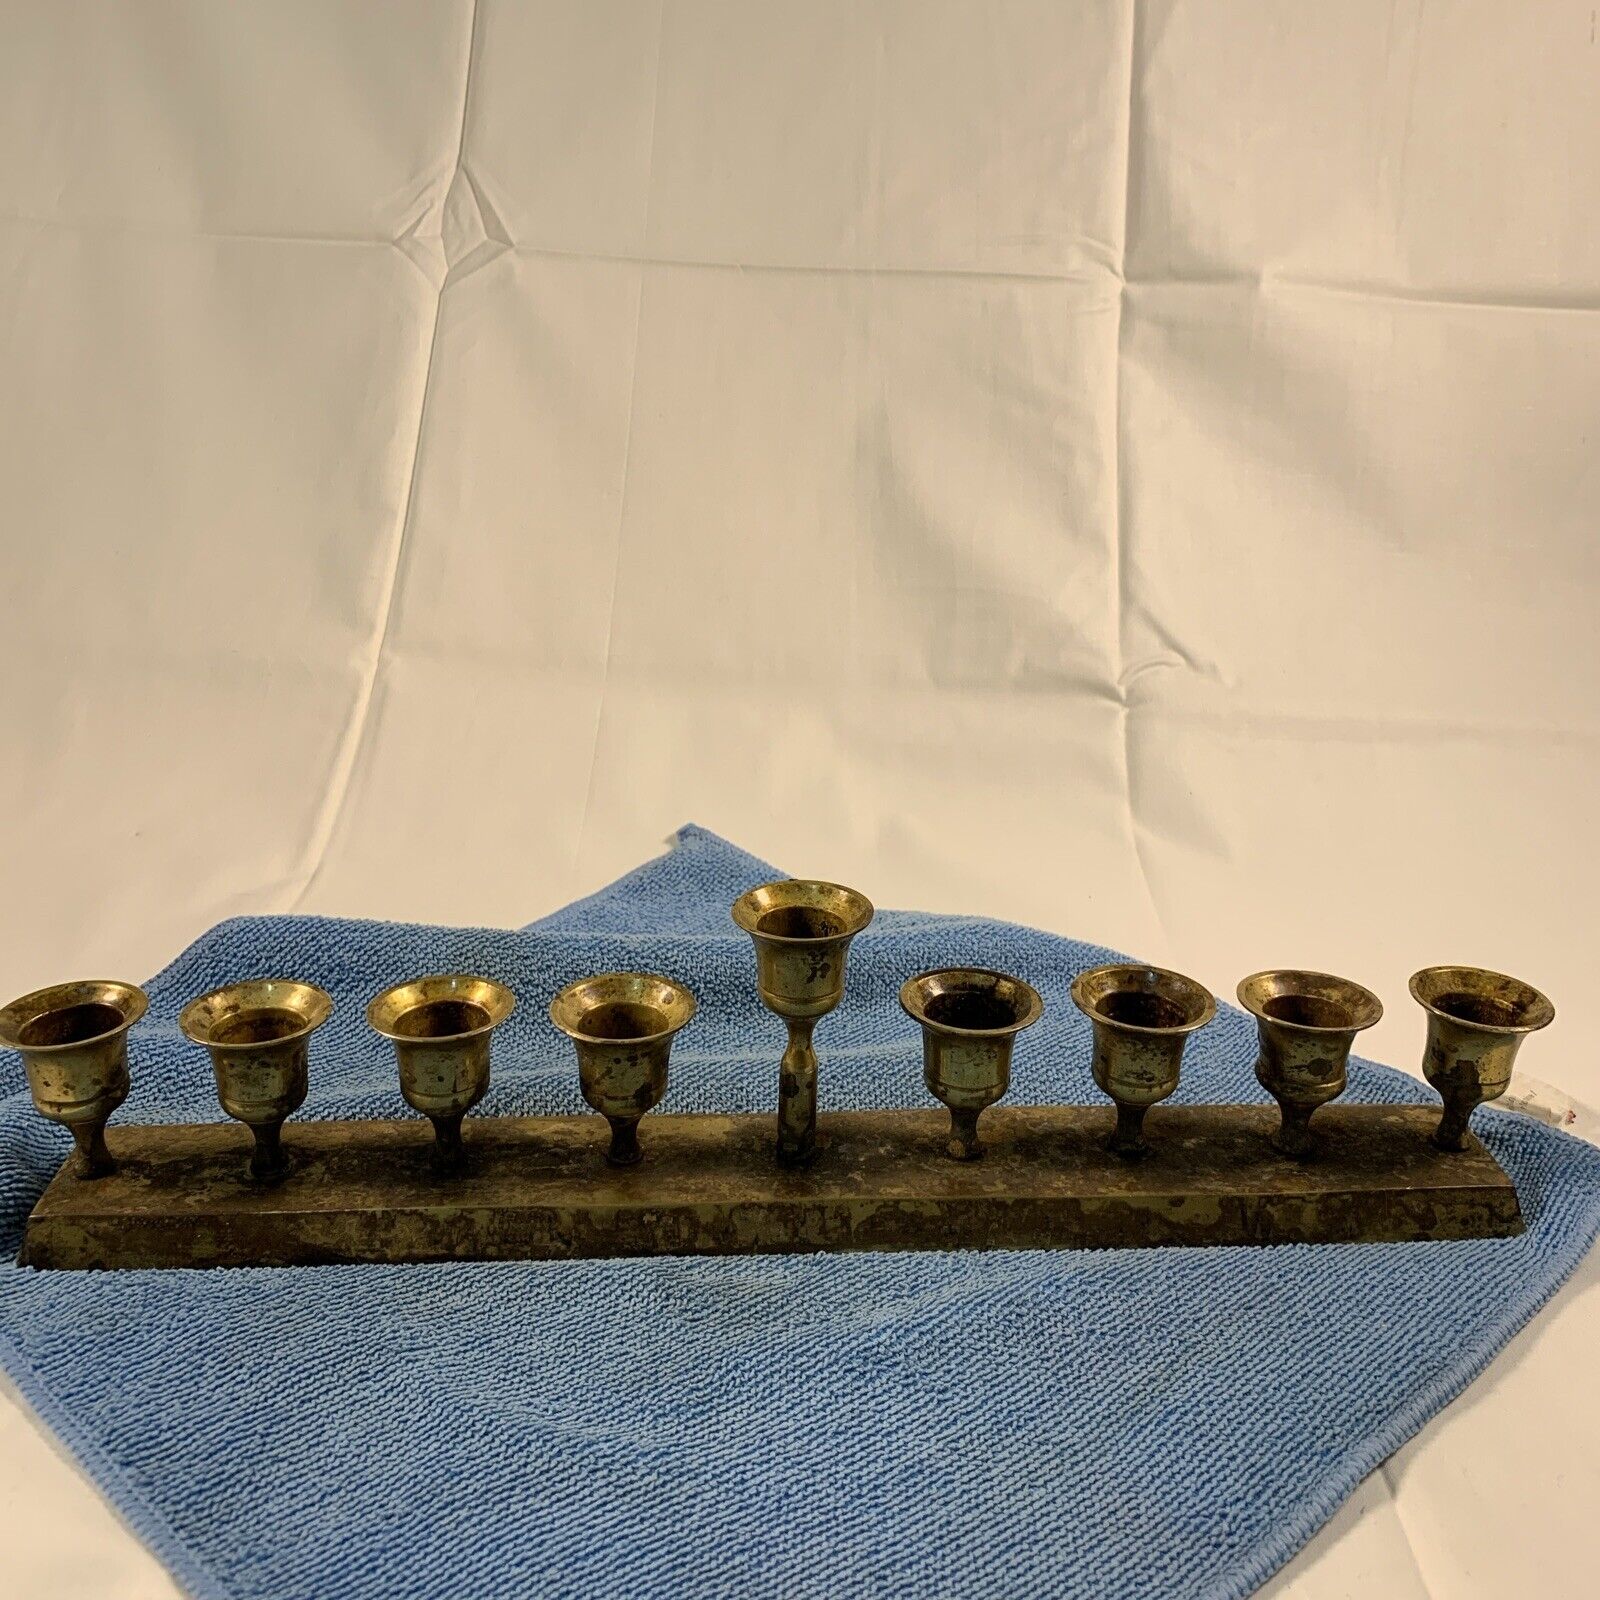 Vintage Brass Candelabra 9 Candle Stick Holder Set 14.25” Long 3” Tall.